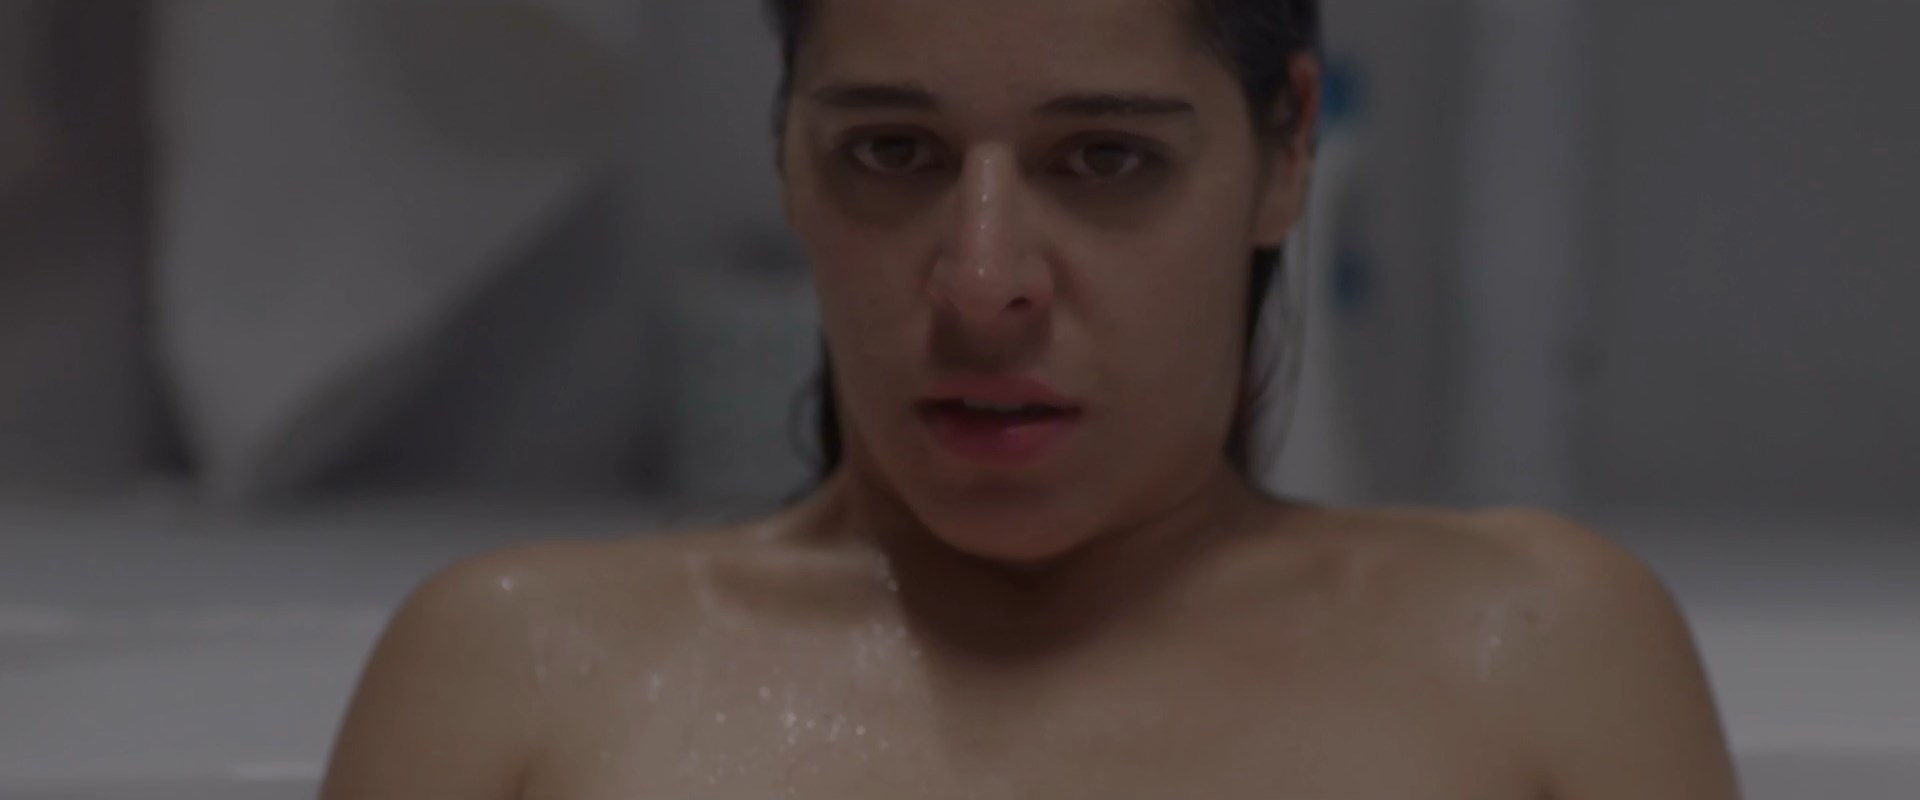 Nude video celebs » Veronica Bravo sexy - Del silencio (2019)